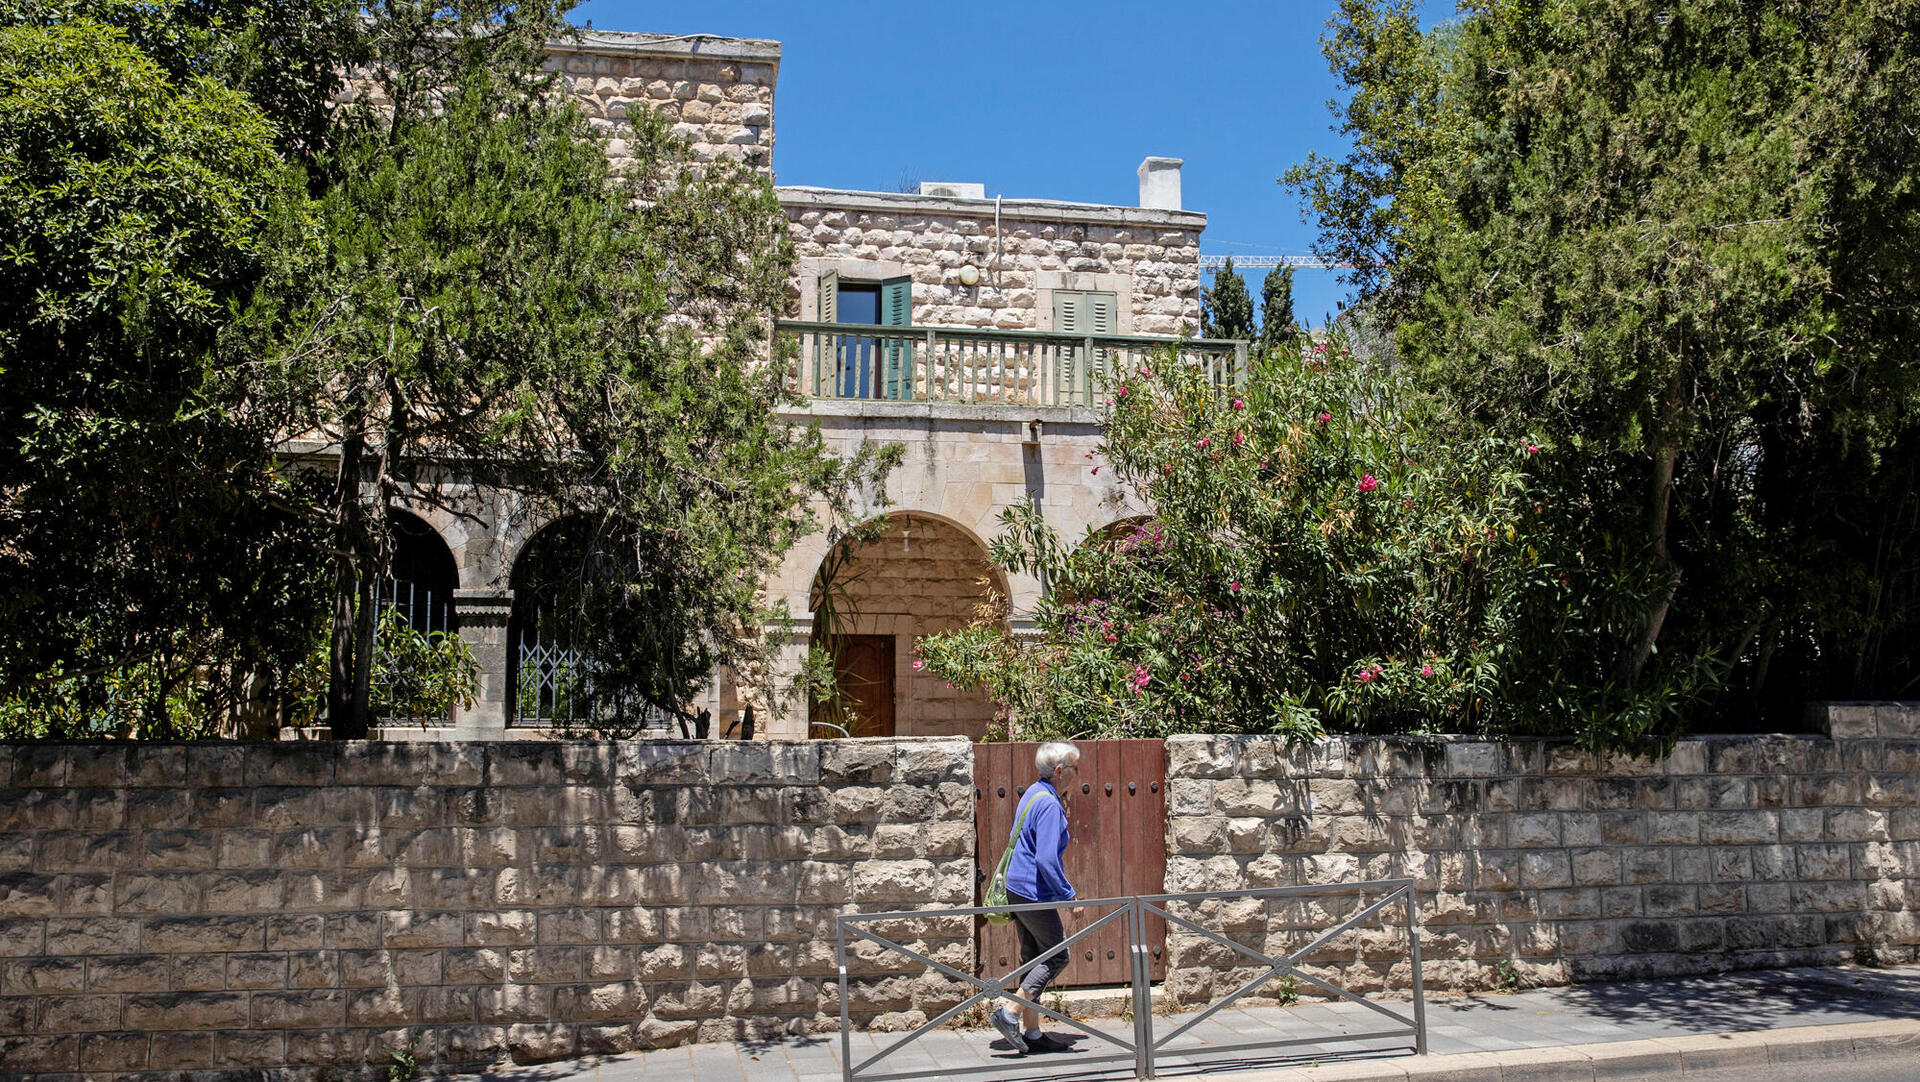 בית אליעזר ו תלמה ילין נמצא בבעלות של חיים פינק ברחוב רמב"ן 14 ירושלים